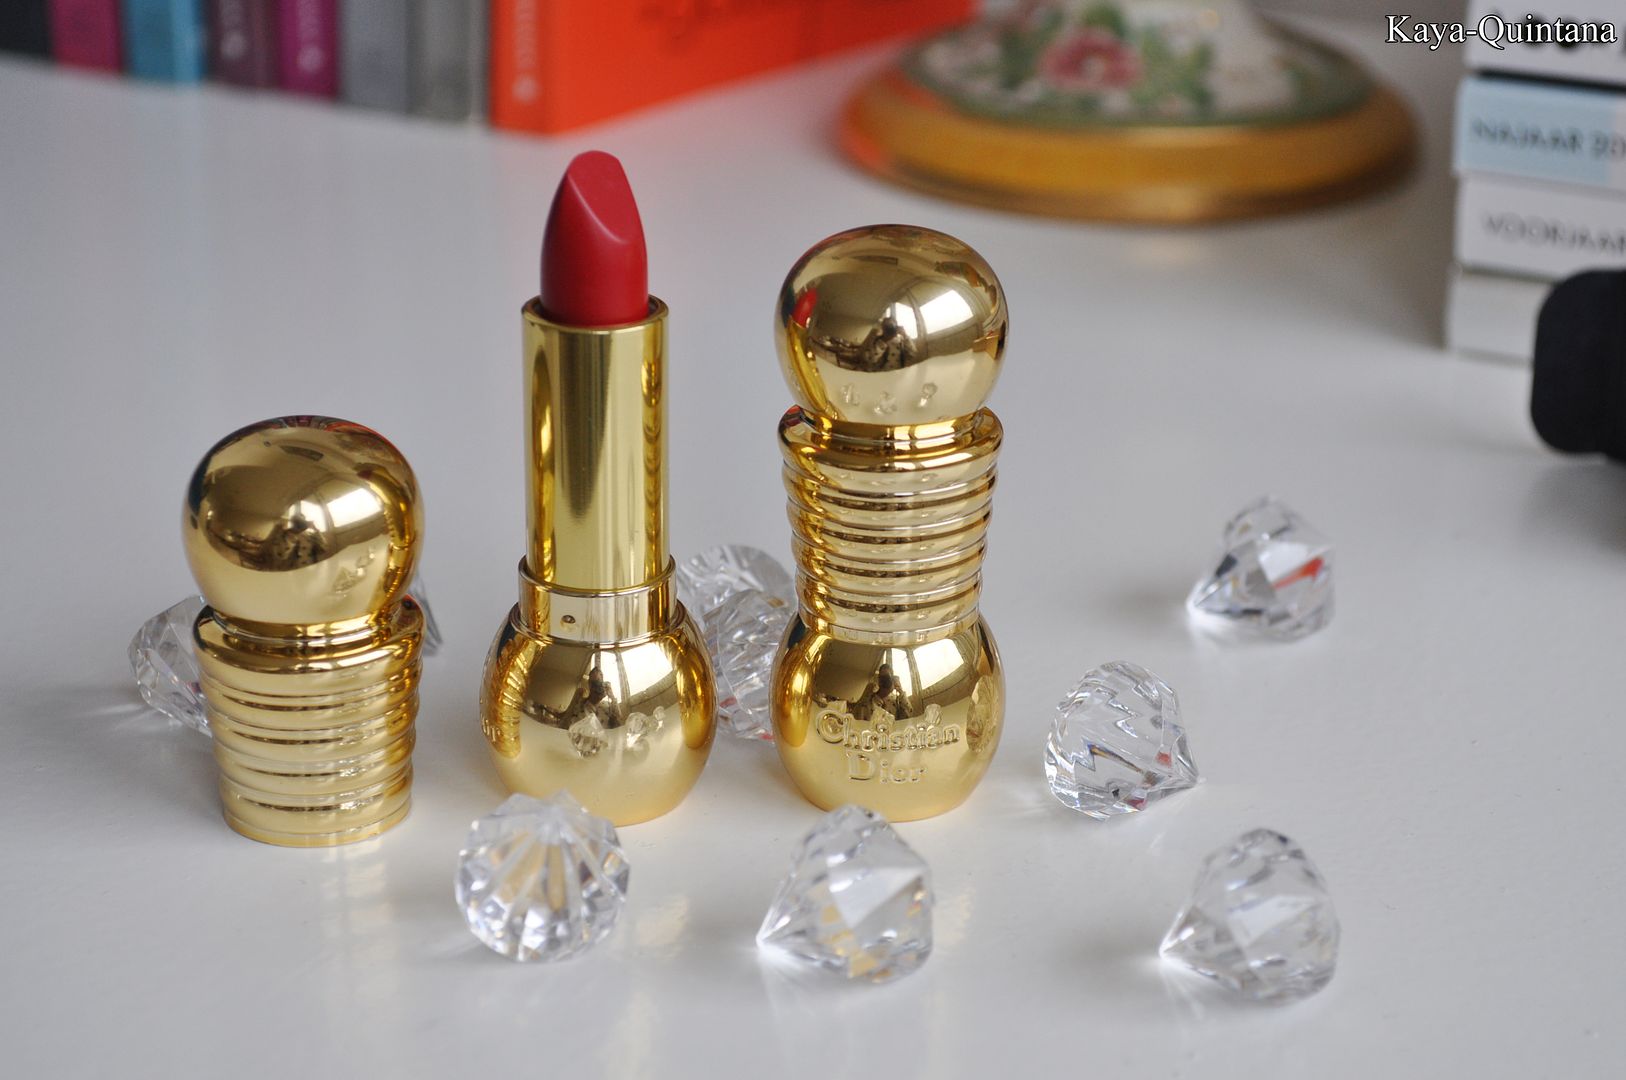 diorific lipstick dior